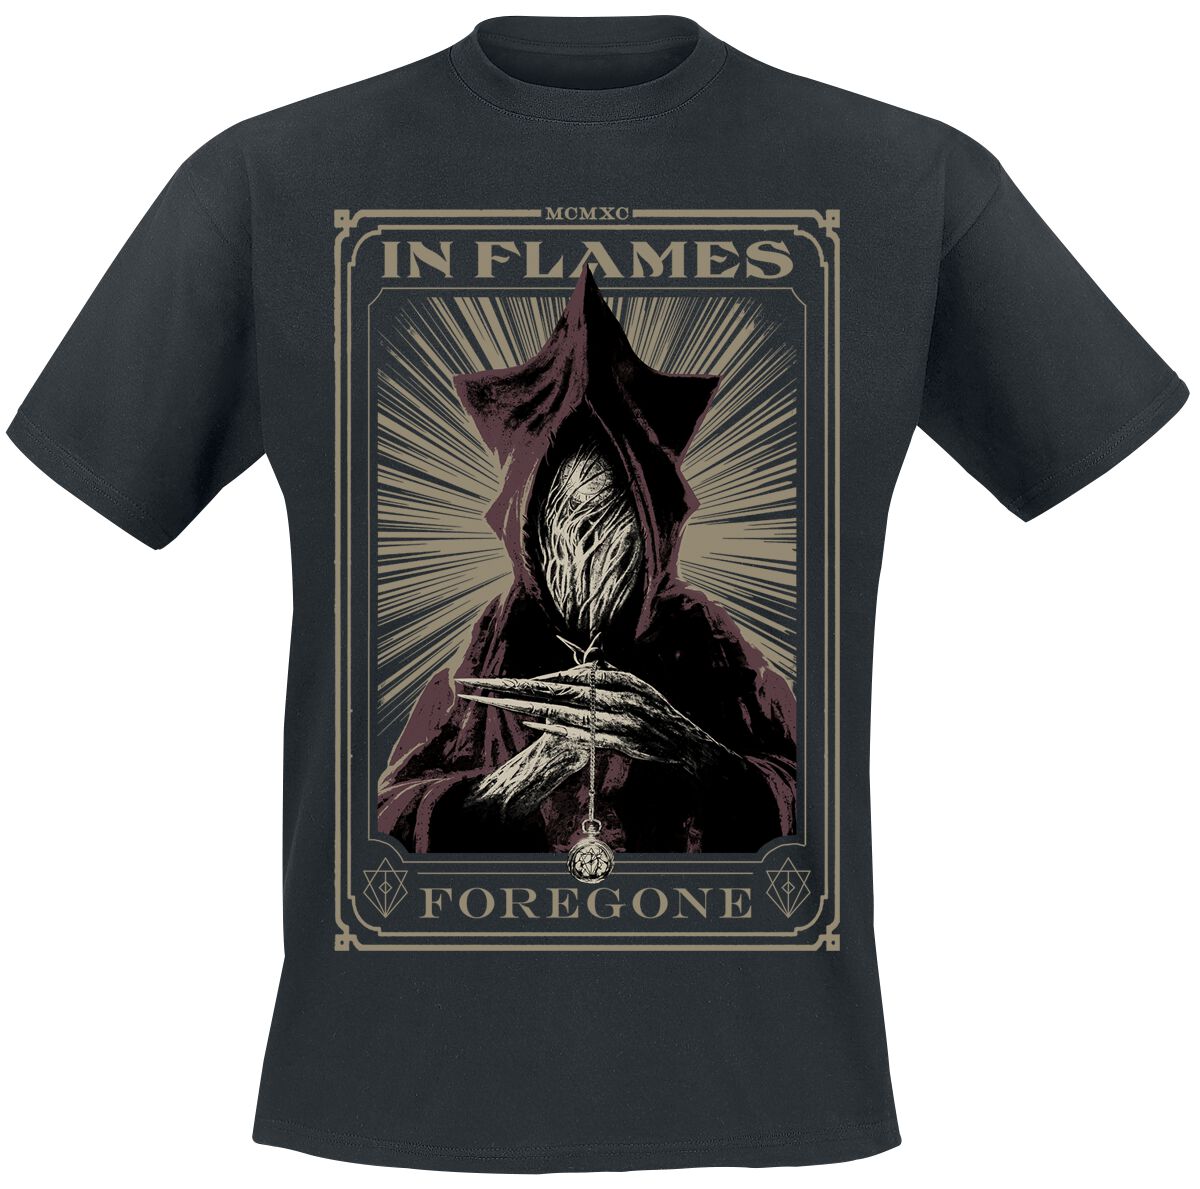 In Flames T-Shirt - Foregone Tarot - S bis 3XL - für Männer - Größe S - schwarz  - Lizenziertes Merchandise!